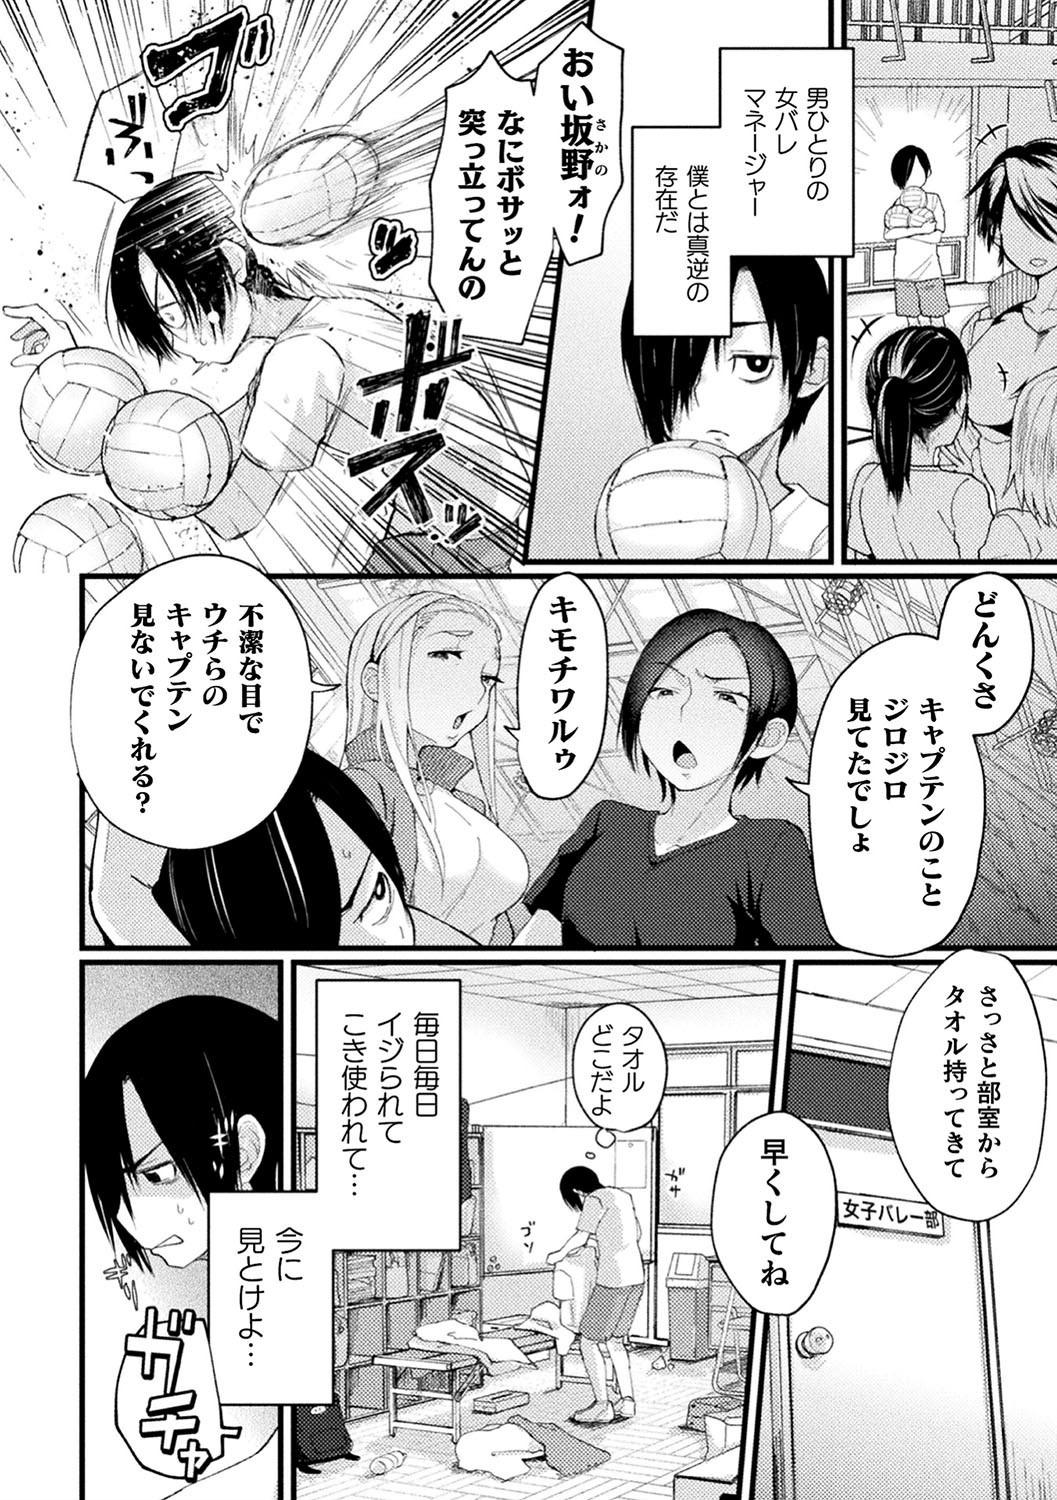 2D Comic Magazine Saimin Kyousei Wakan Ijirare Heroine Mesukoi Acme! Vol. 1 3